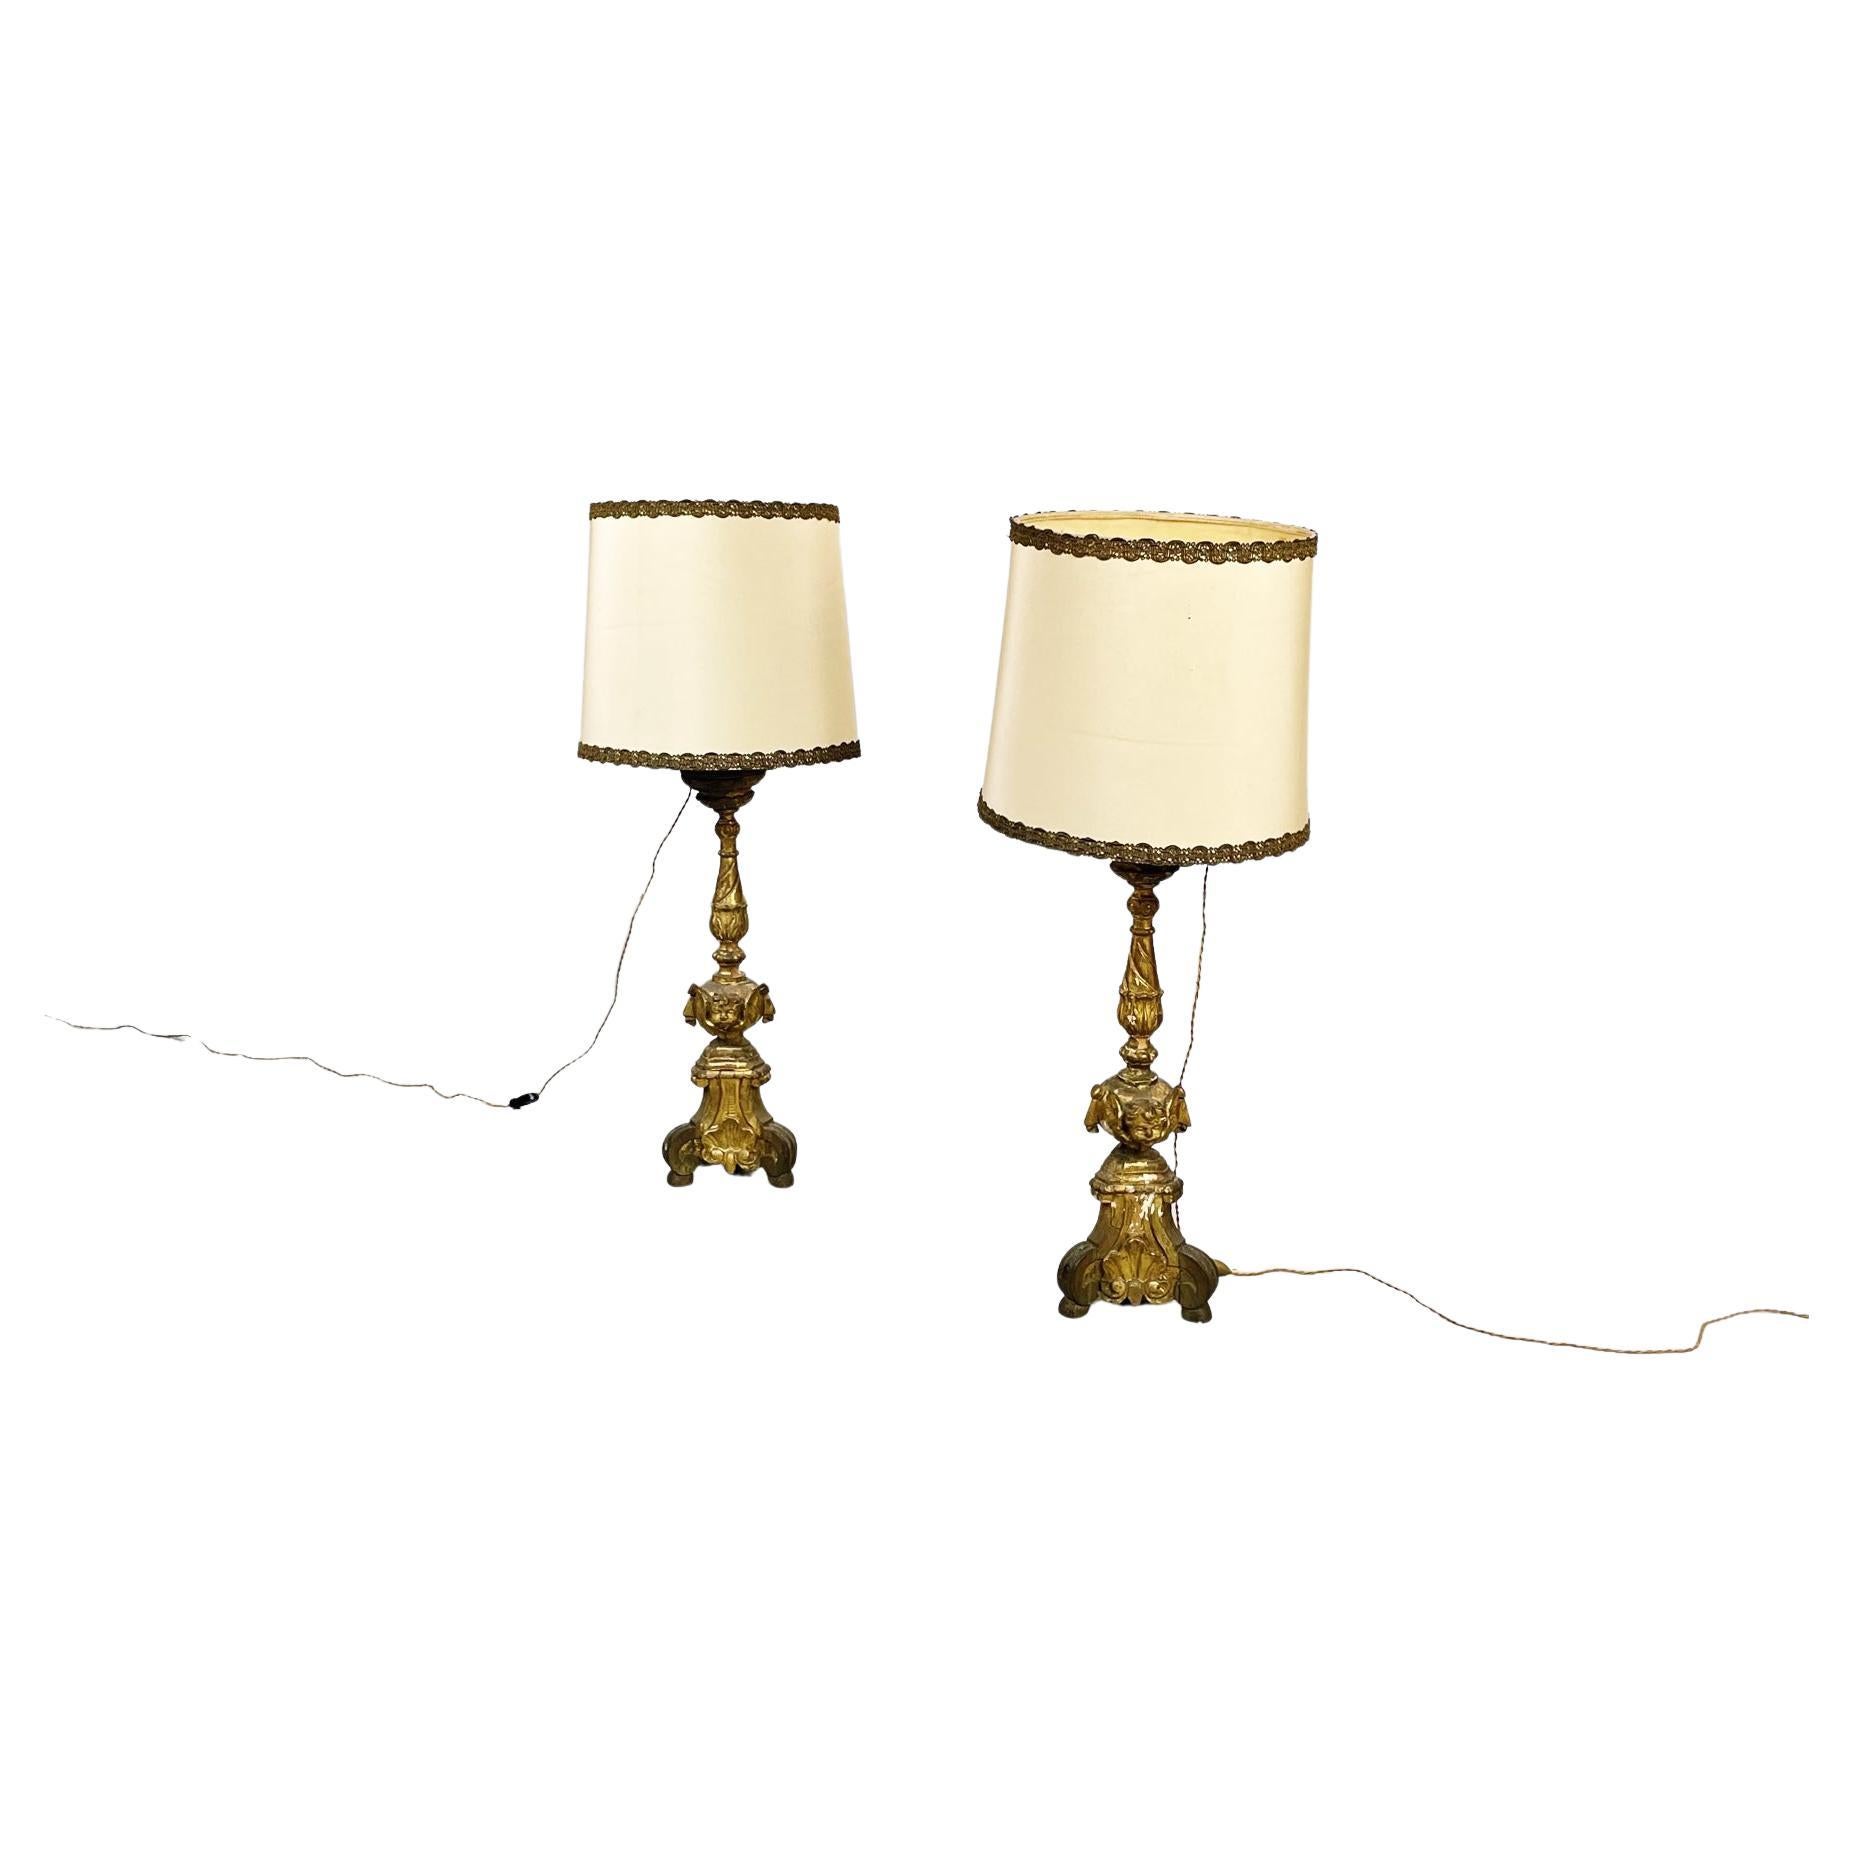 Lampes à candélabre italiennes anciennes en bois peint en or et tissu beige, années 1800